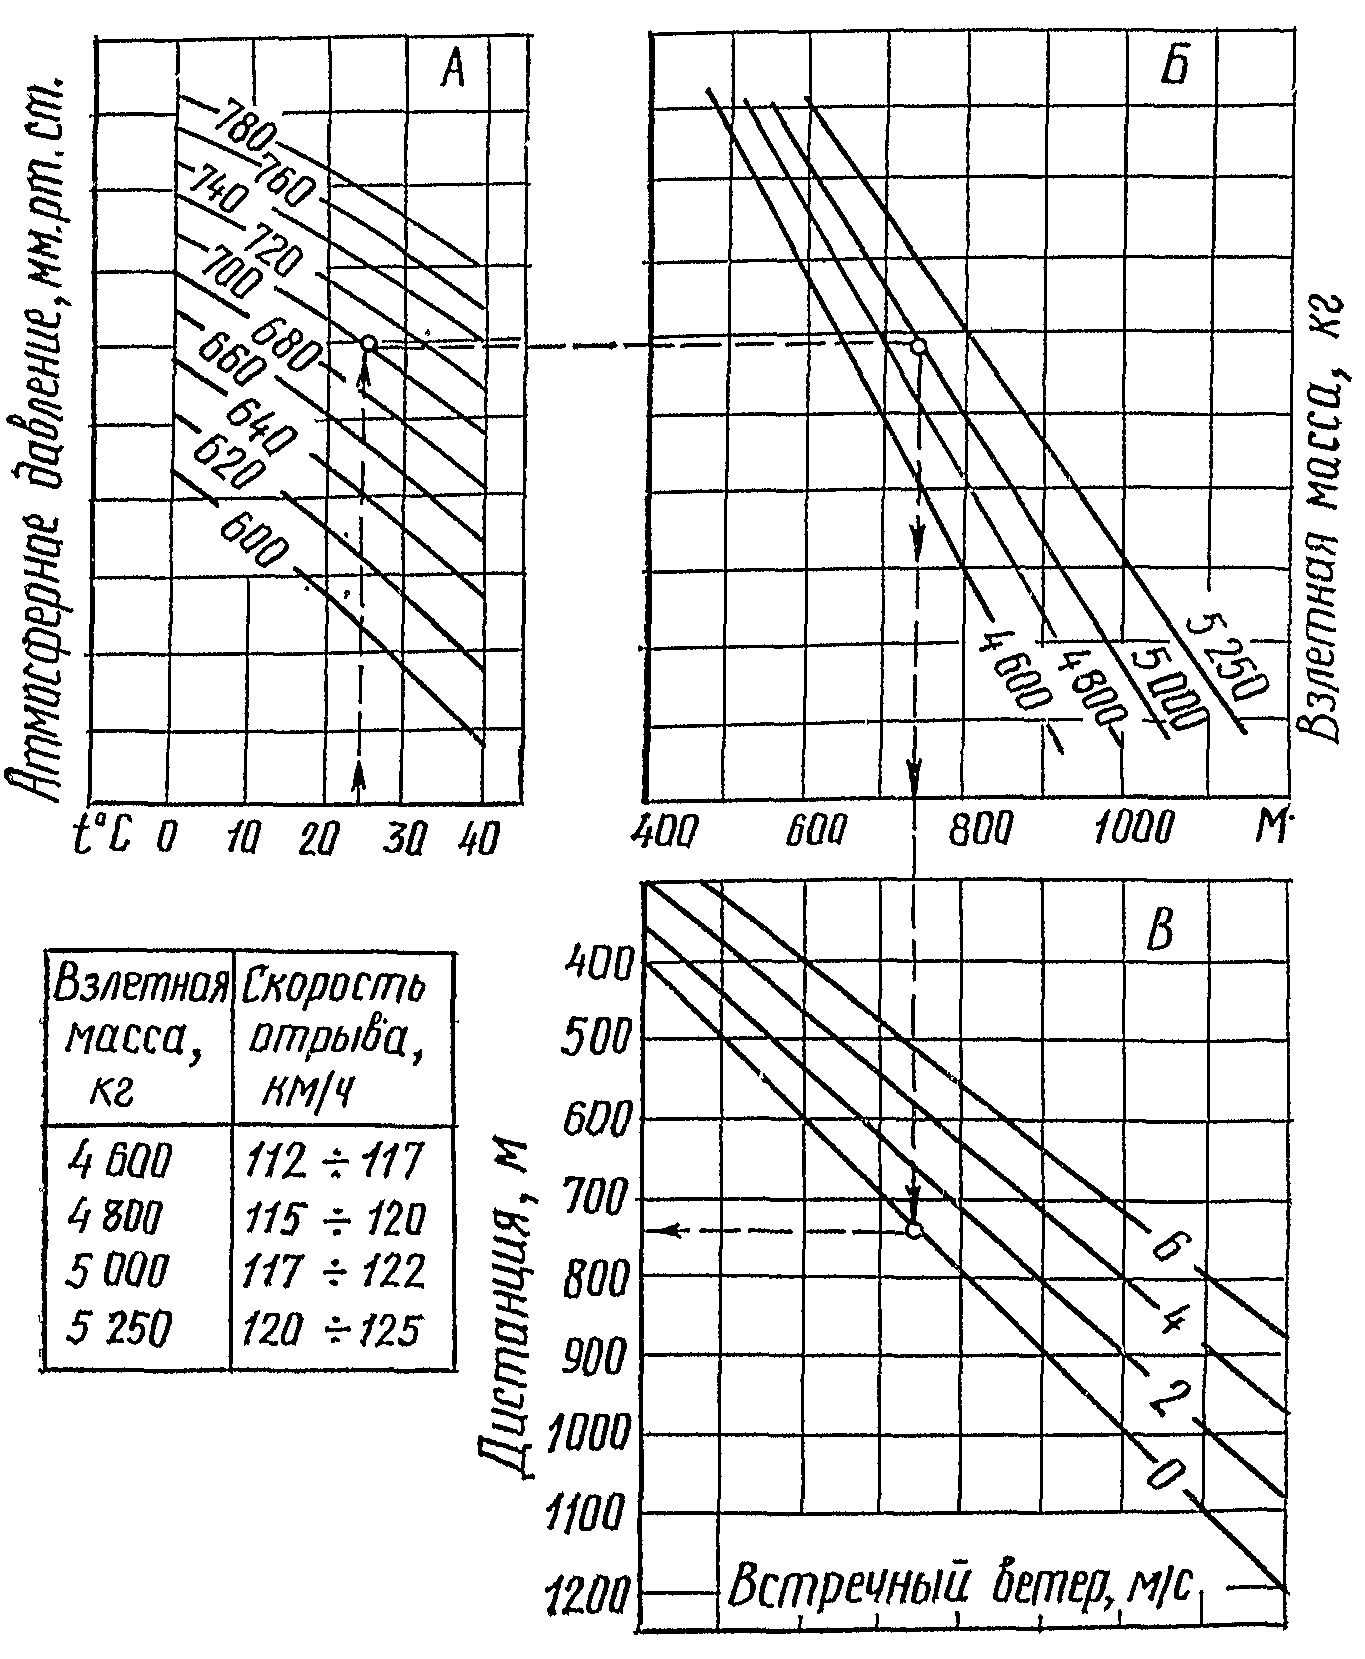 Номограмма № 3 для определения дистанции прерванного взлета самолета Ан-2В